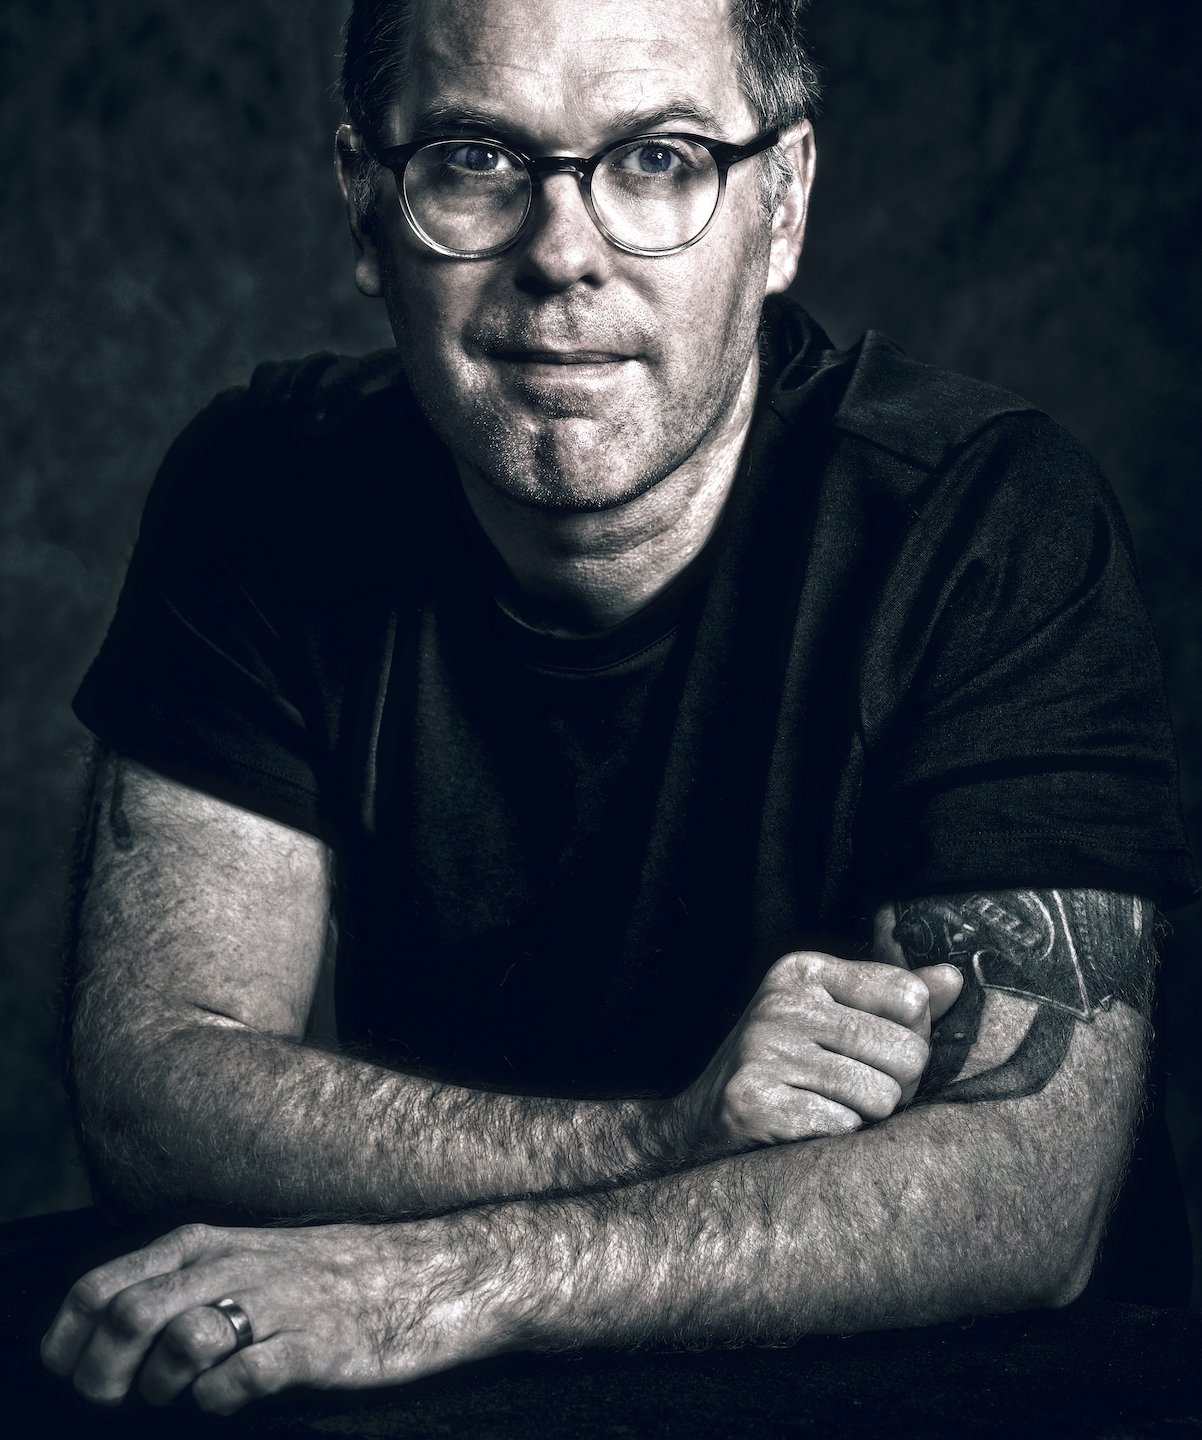 Peter C. Stitt, photographer